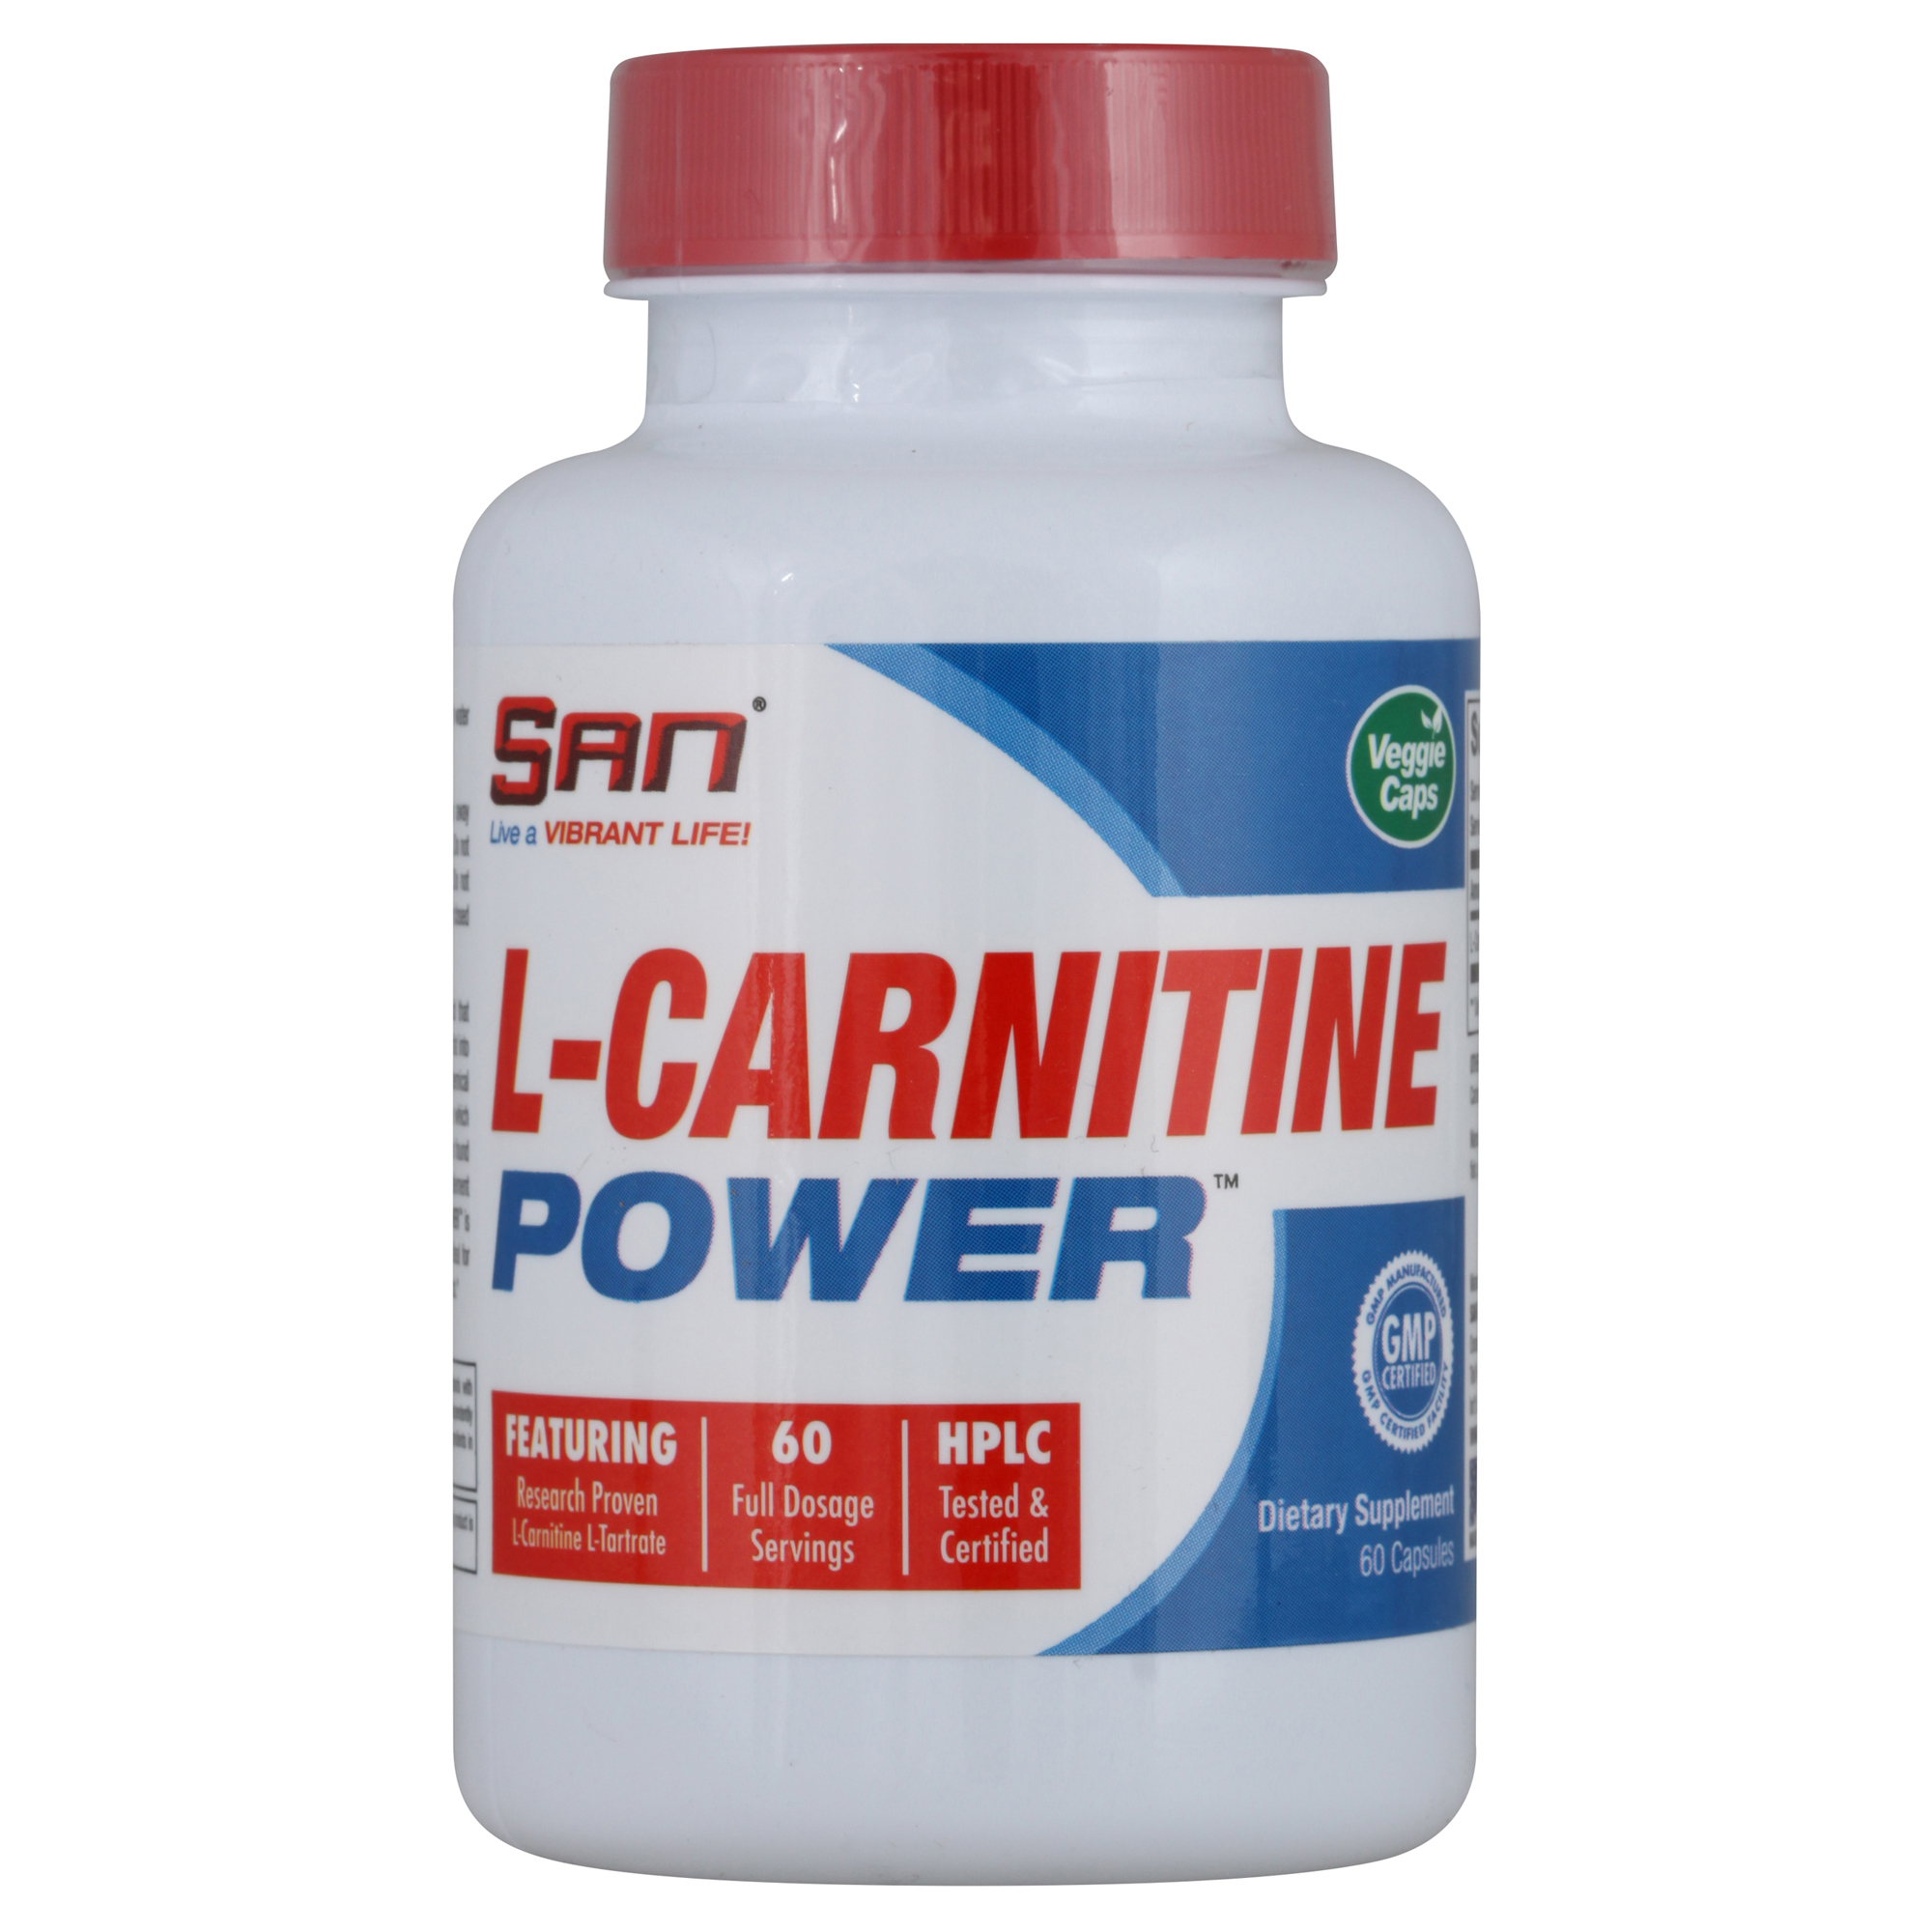 L-карнитин/витамин b11